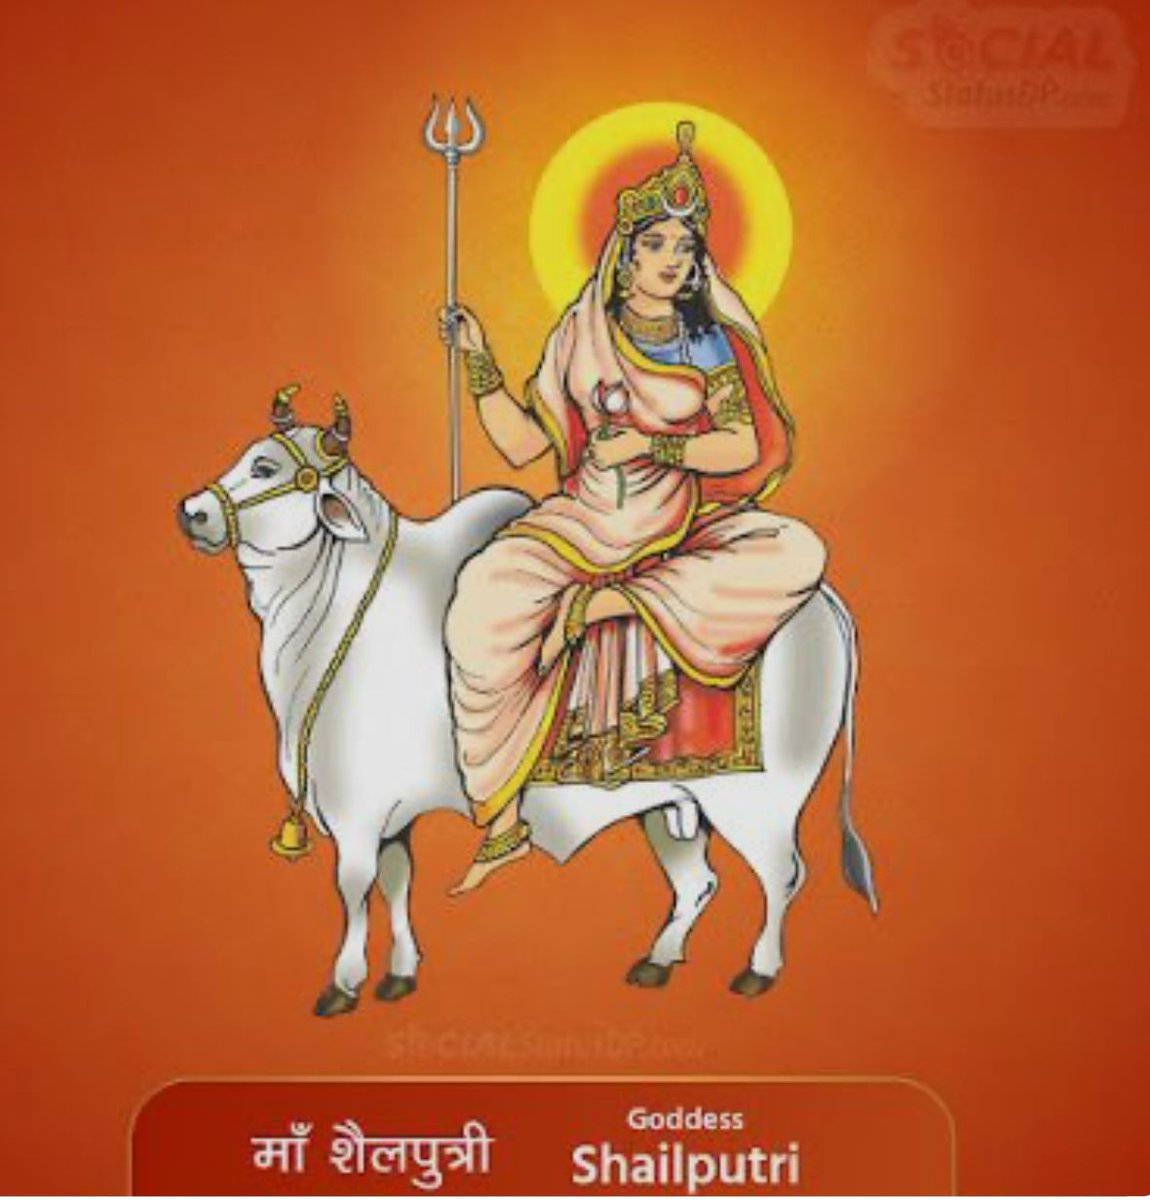 भारतीय नव वर्ष विक्रमी संवत 2081, चैत्र नवरात्रि, उगादी और गुड़ी पाड़वा की आप को और आपके परिवार को हार्दिक शुभकामनाएं।